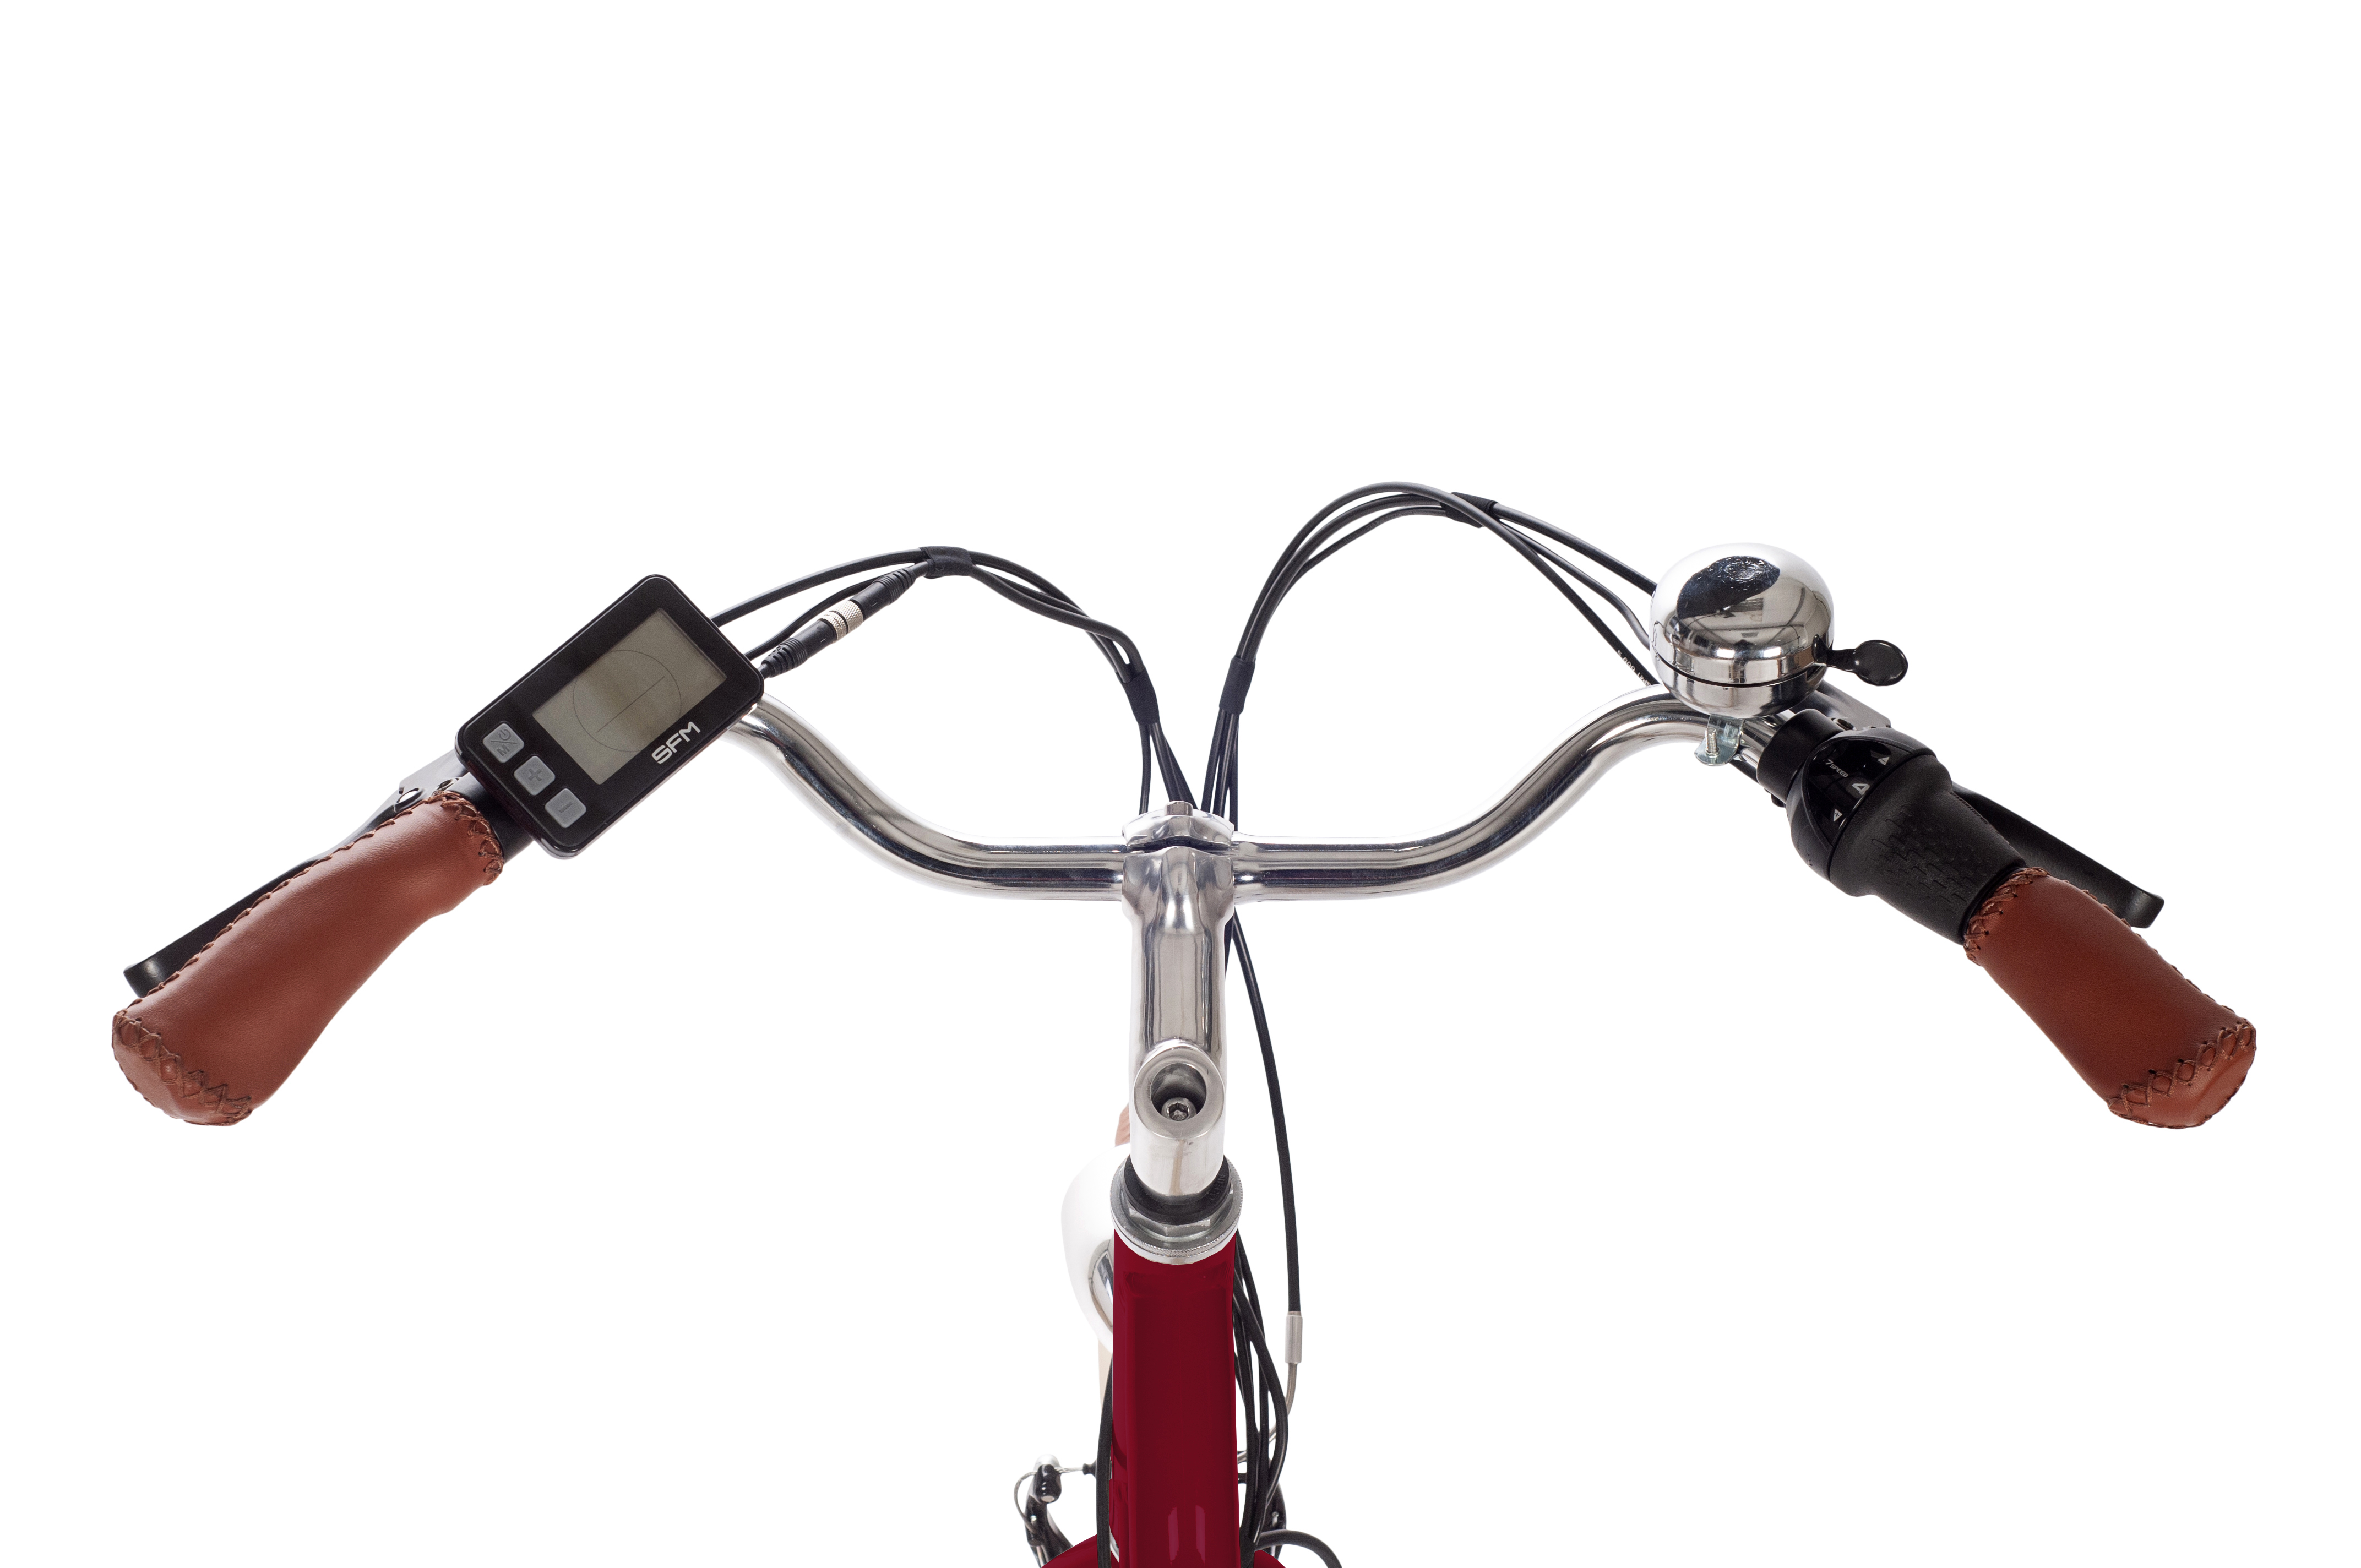 SAXONETTE CLASSIC PLUS 2.0 E-Bike mit Rücktrittbremse